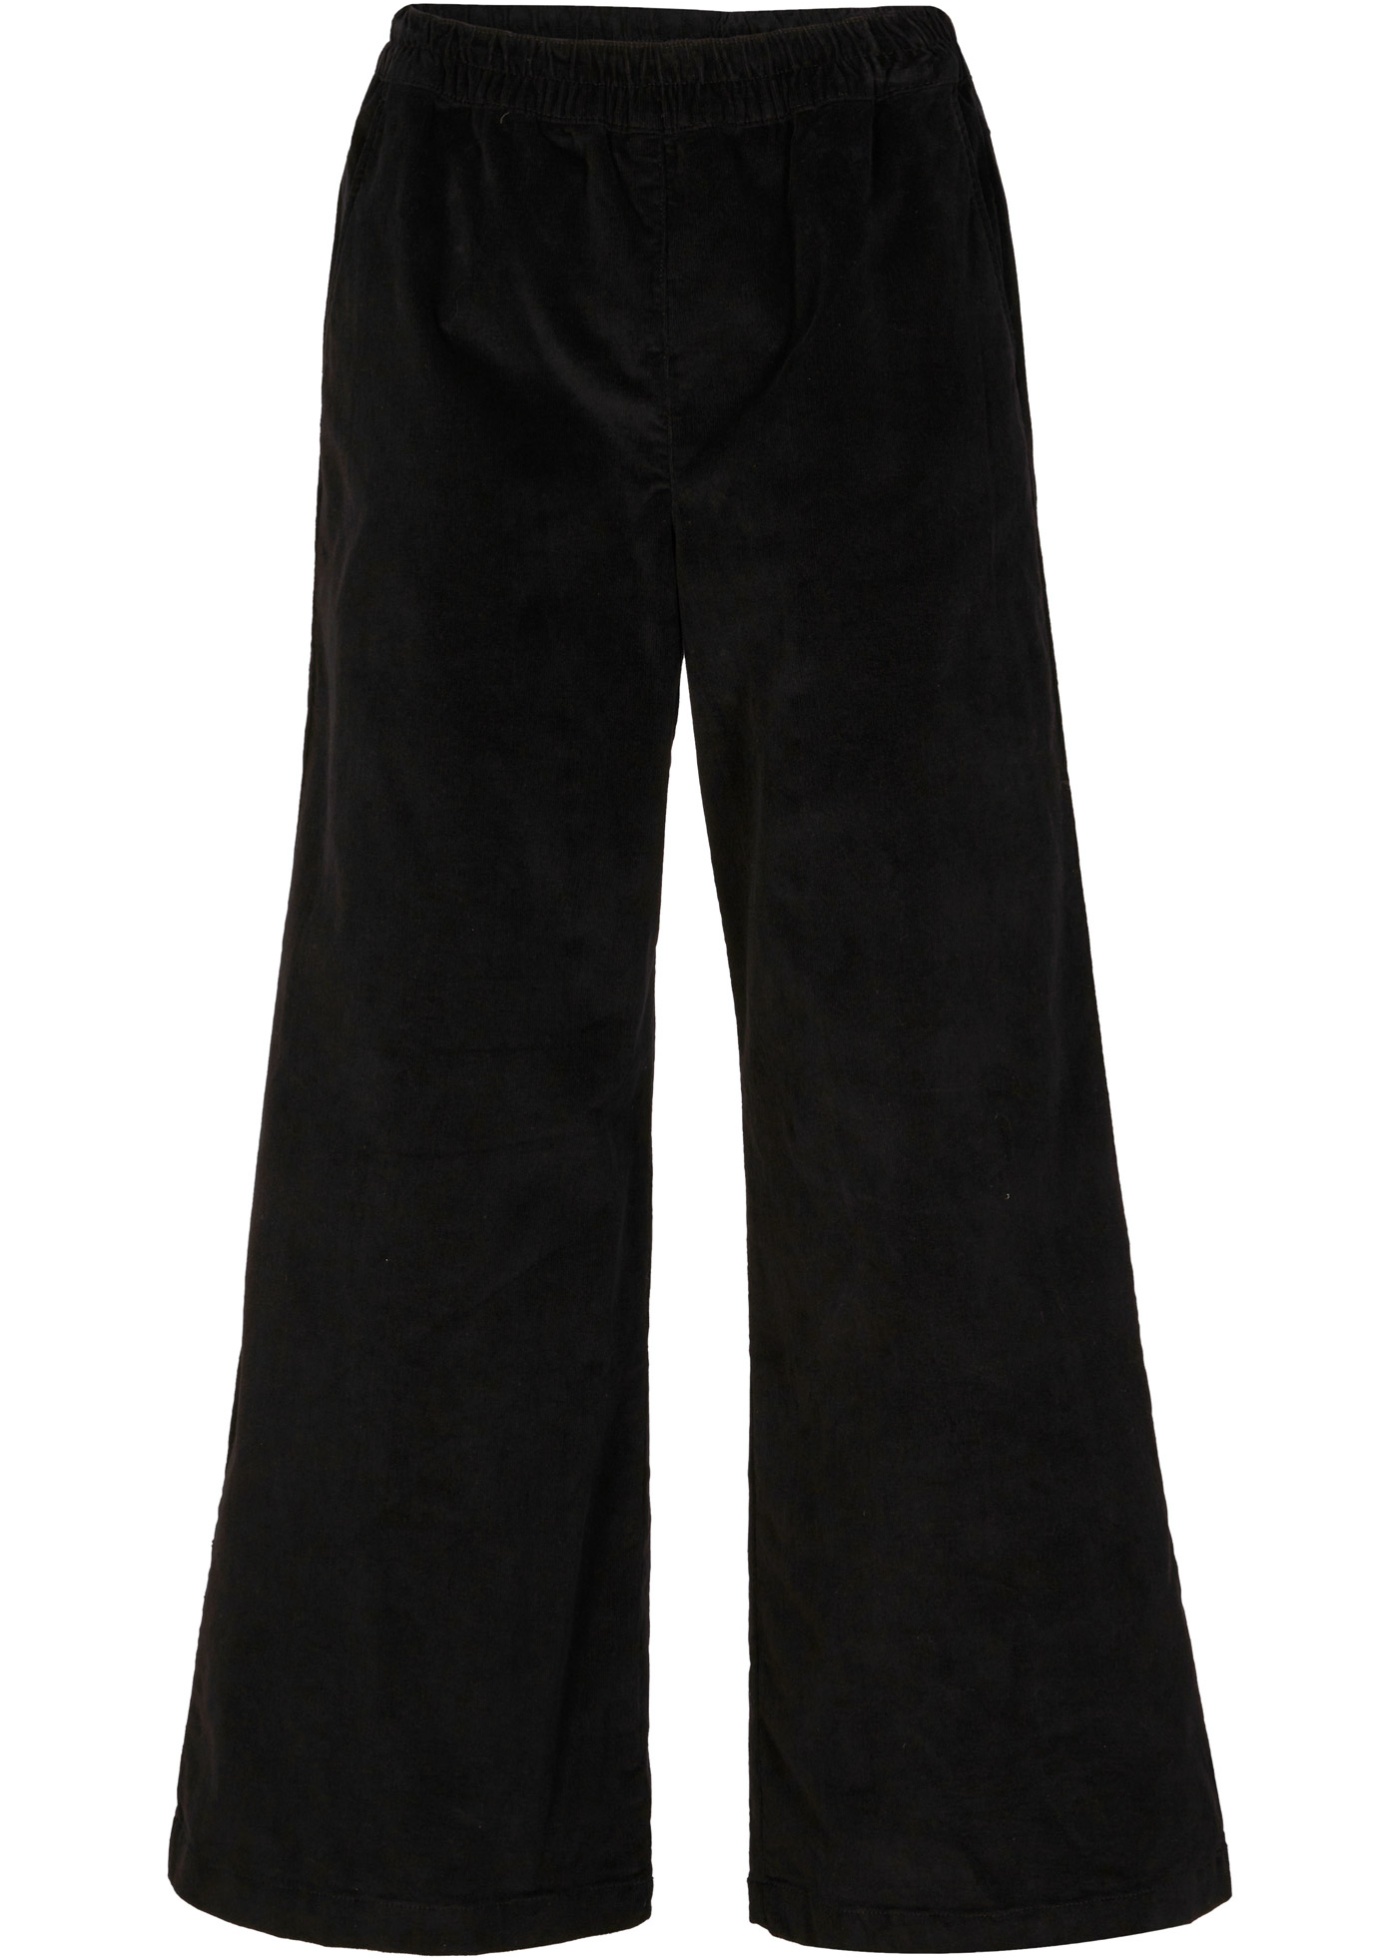 pantalon large en velours côtelé avec taille confort, longueur cheville